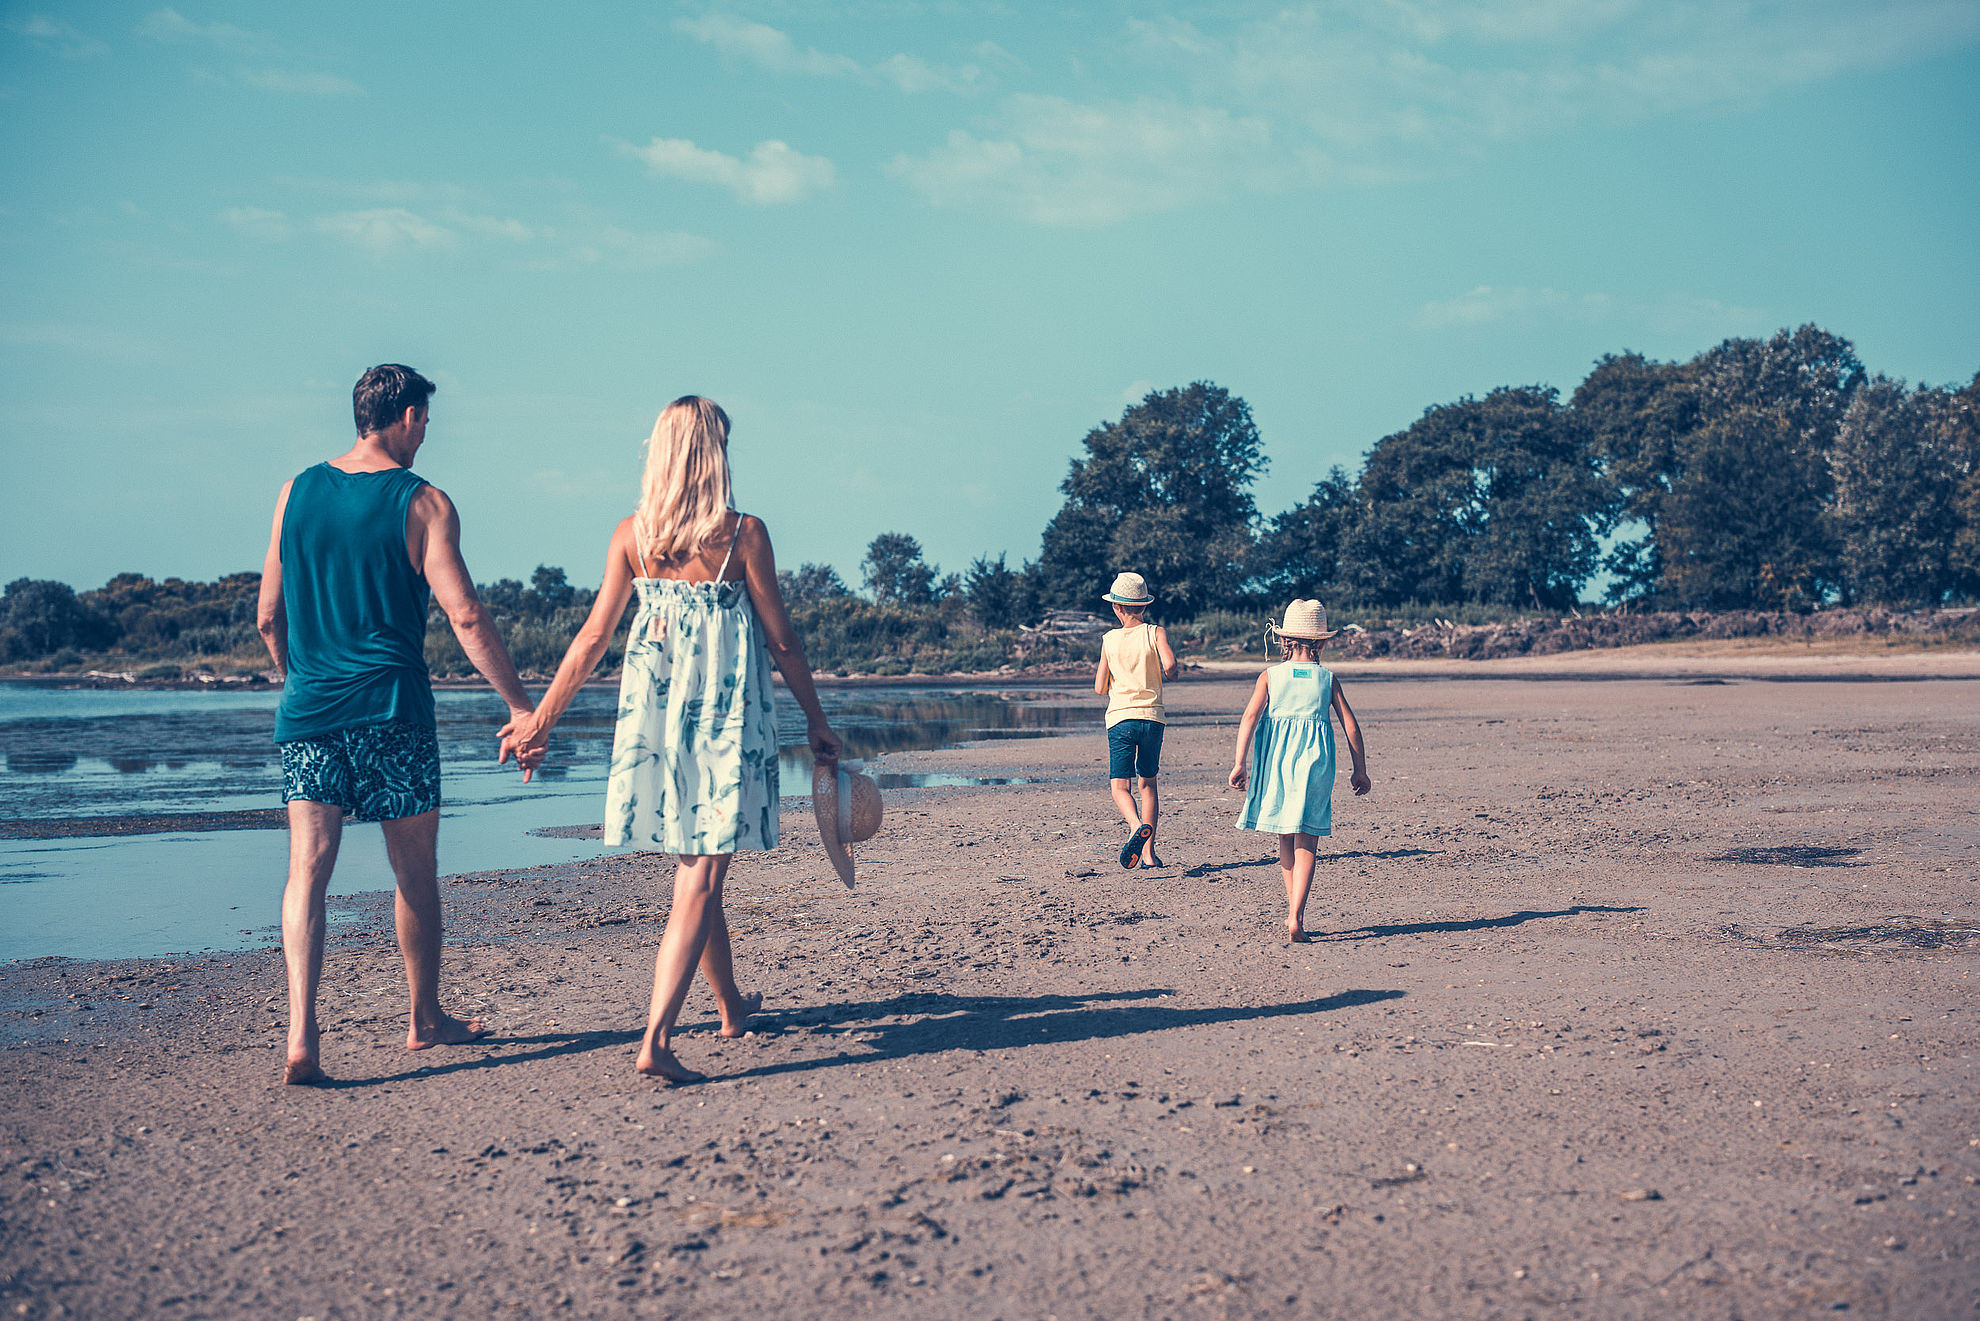 Spaziergang am Strand mit der Familie bei Ebbe